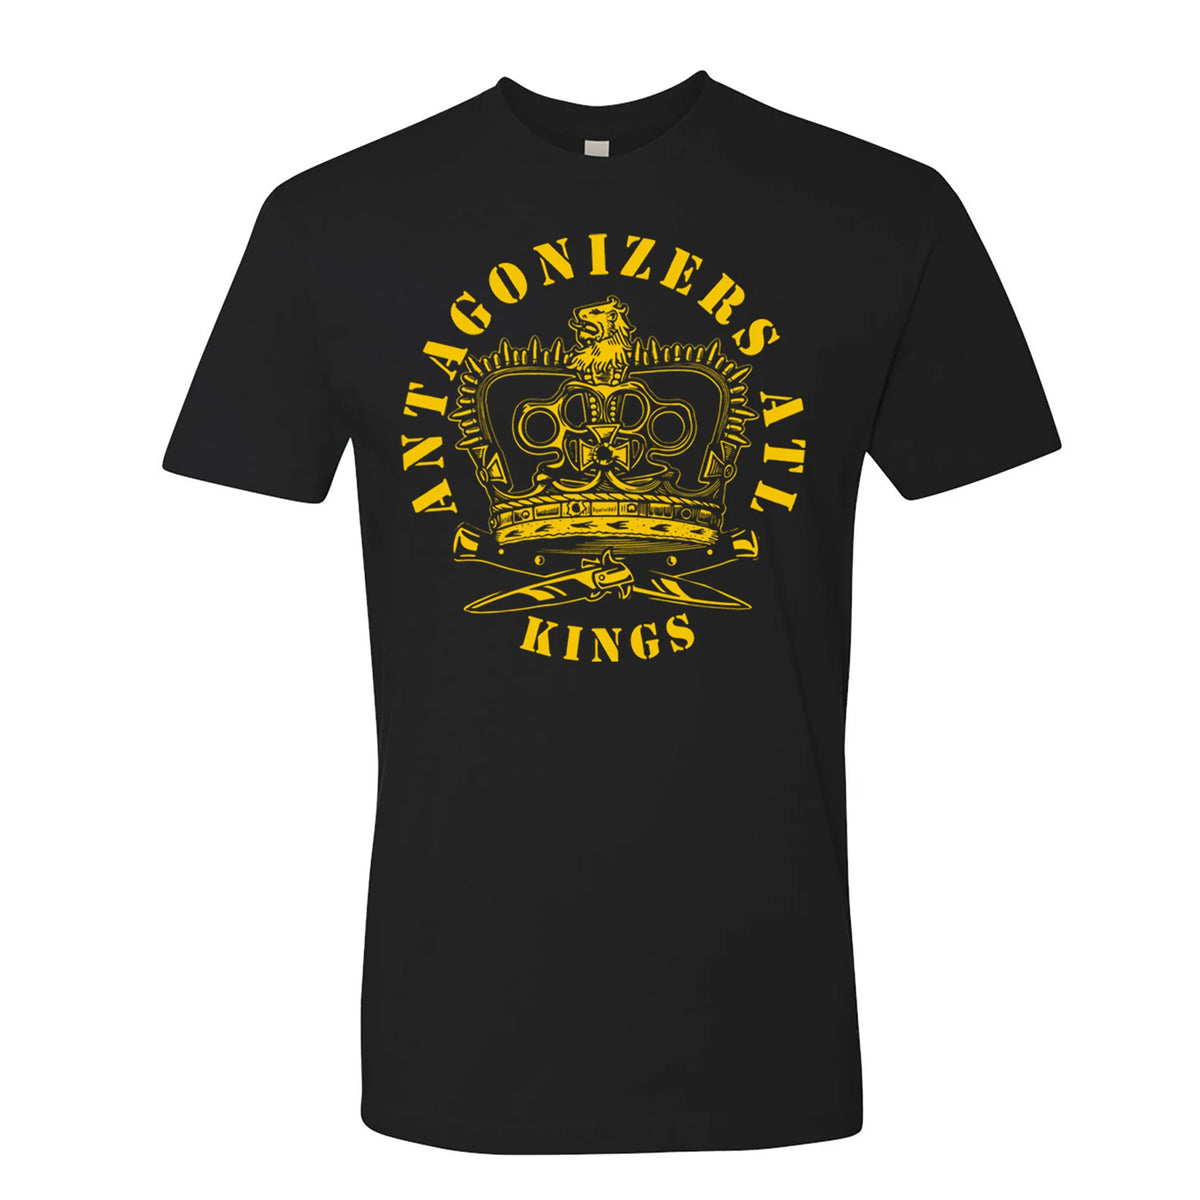 Antagonizers ATL - Kings Black T-Shirt